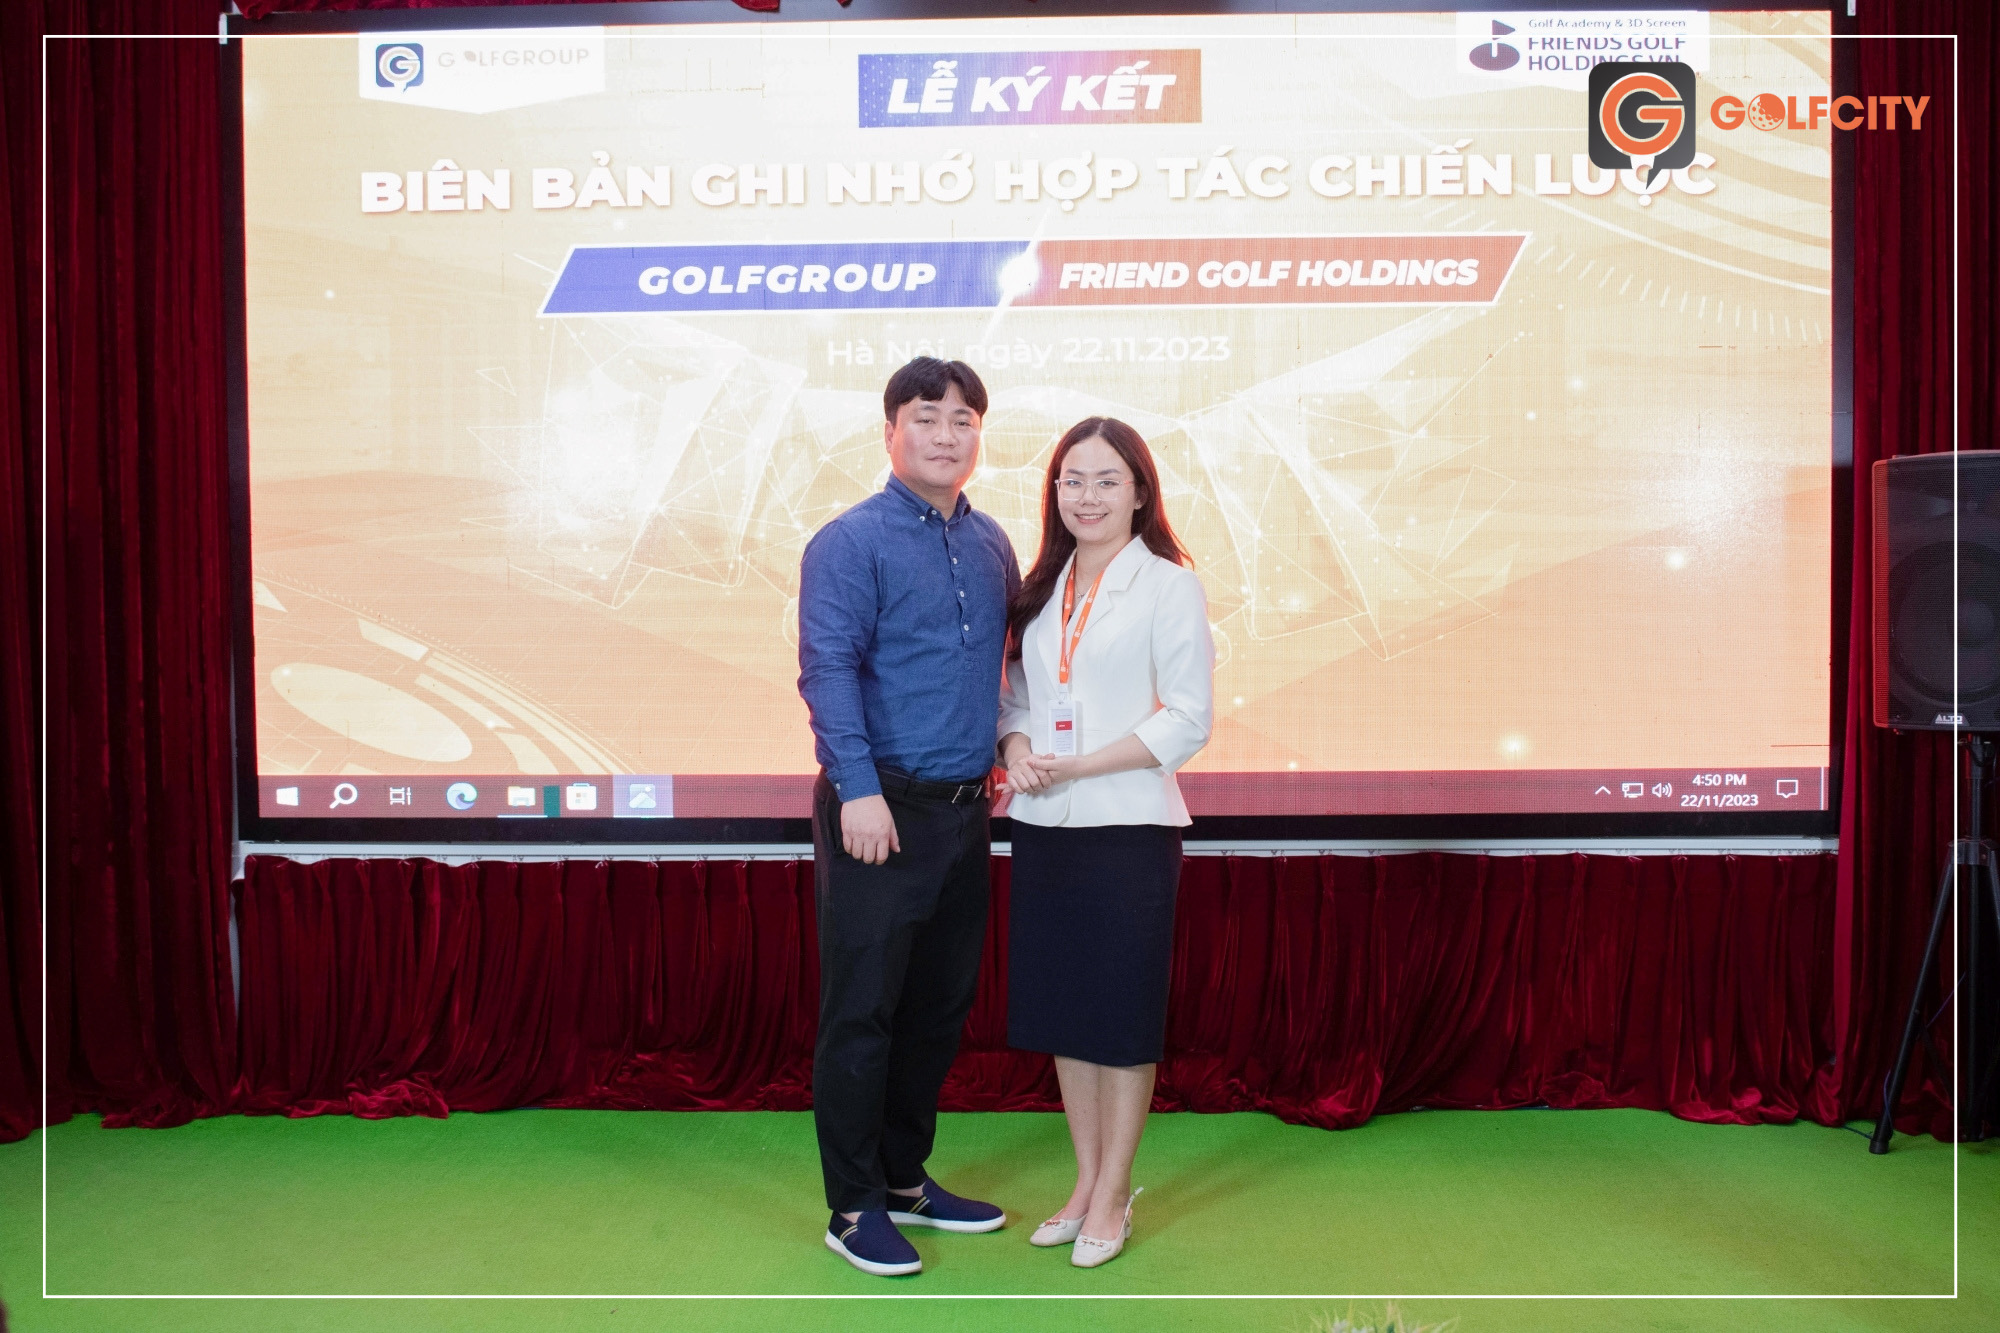 Giám đốc Thùy Linh của GolfGroup và Mr. Kim phía Friends Golf Holdings